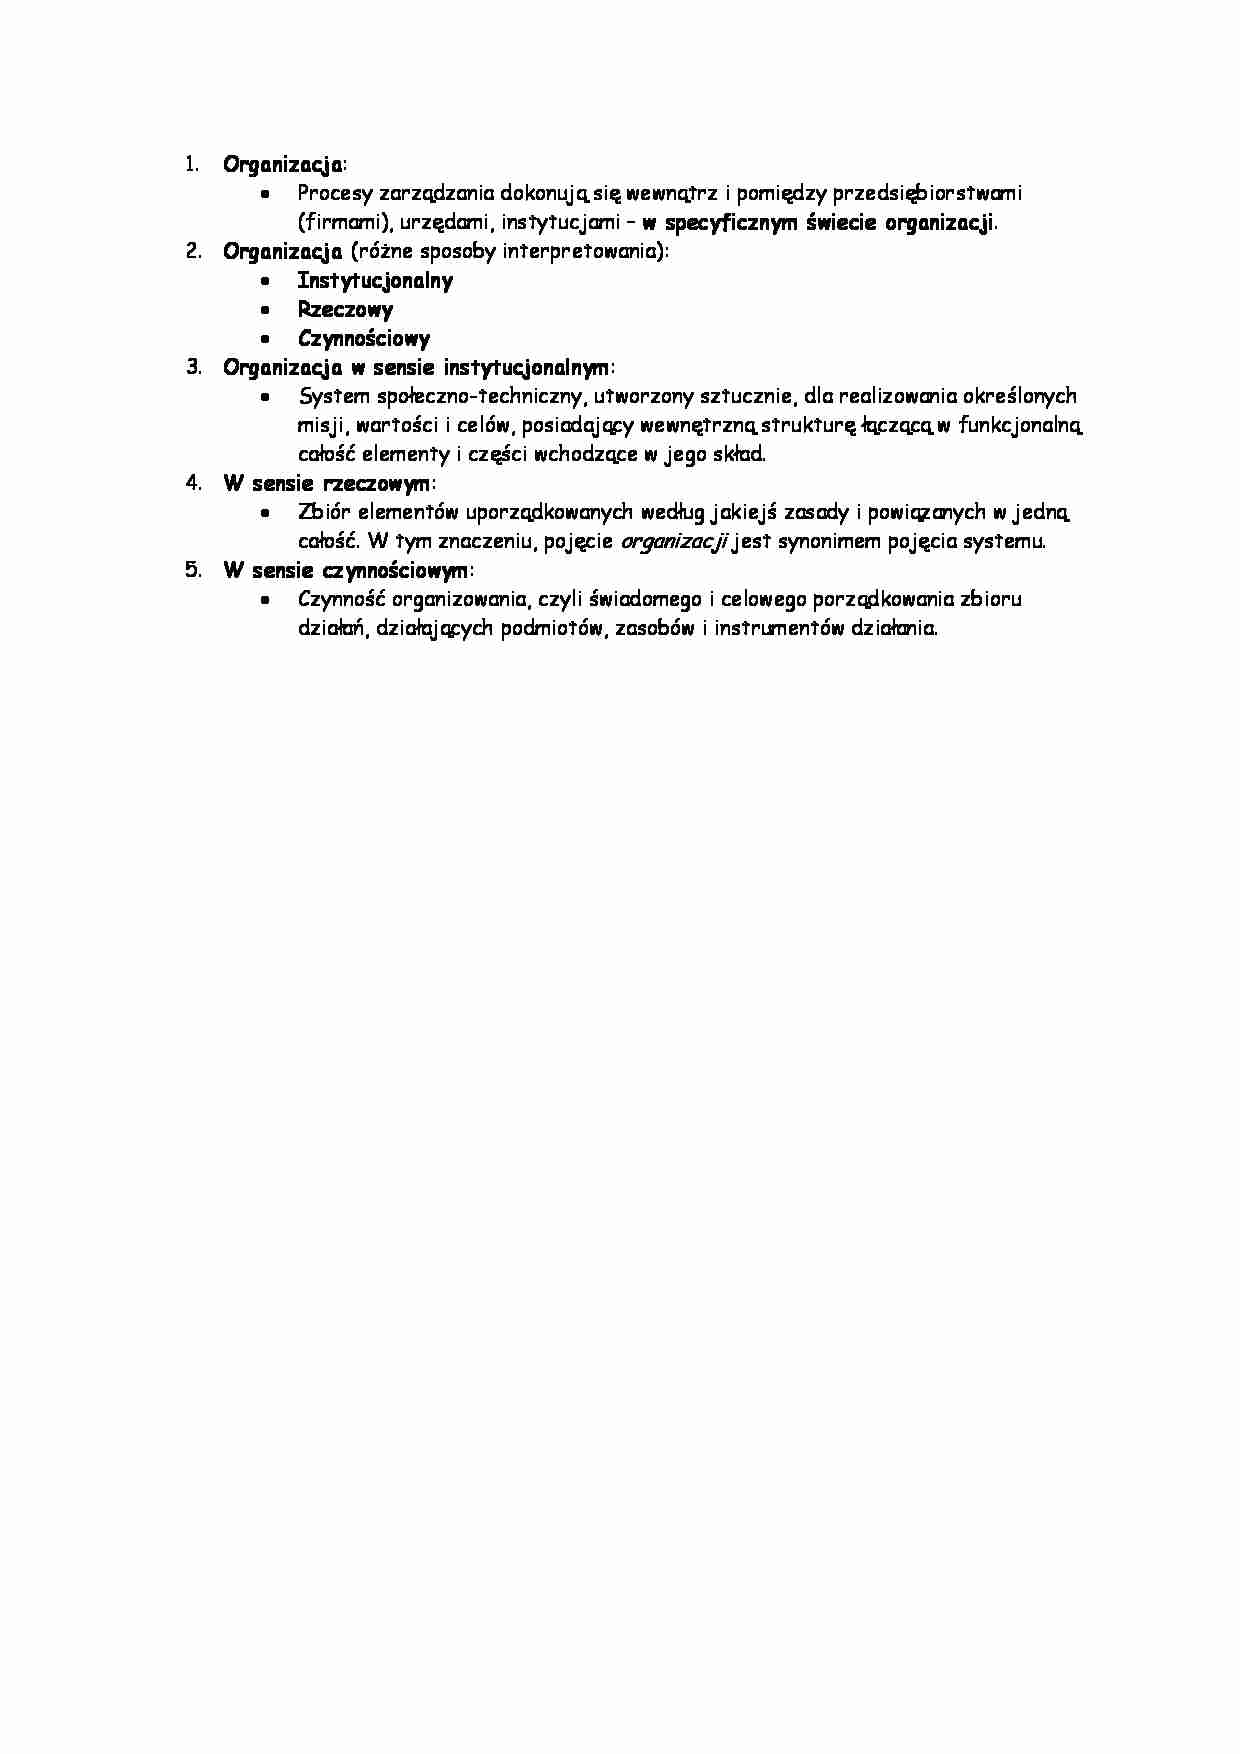 Zarządzanie zasoabmi ludzkimi - Organizacja - strona 1